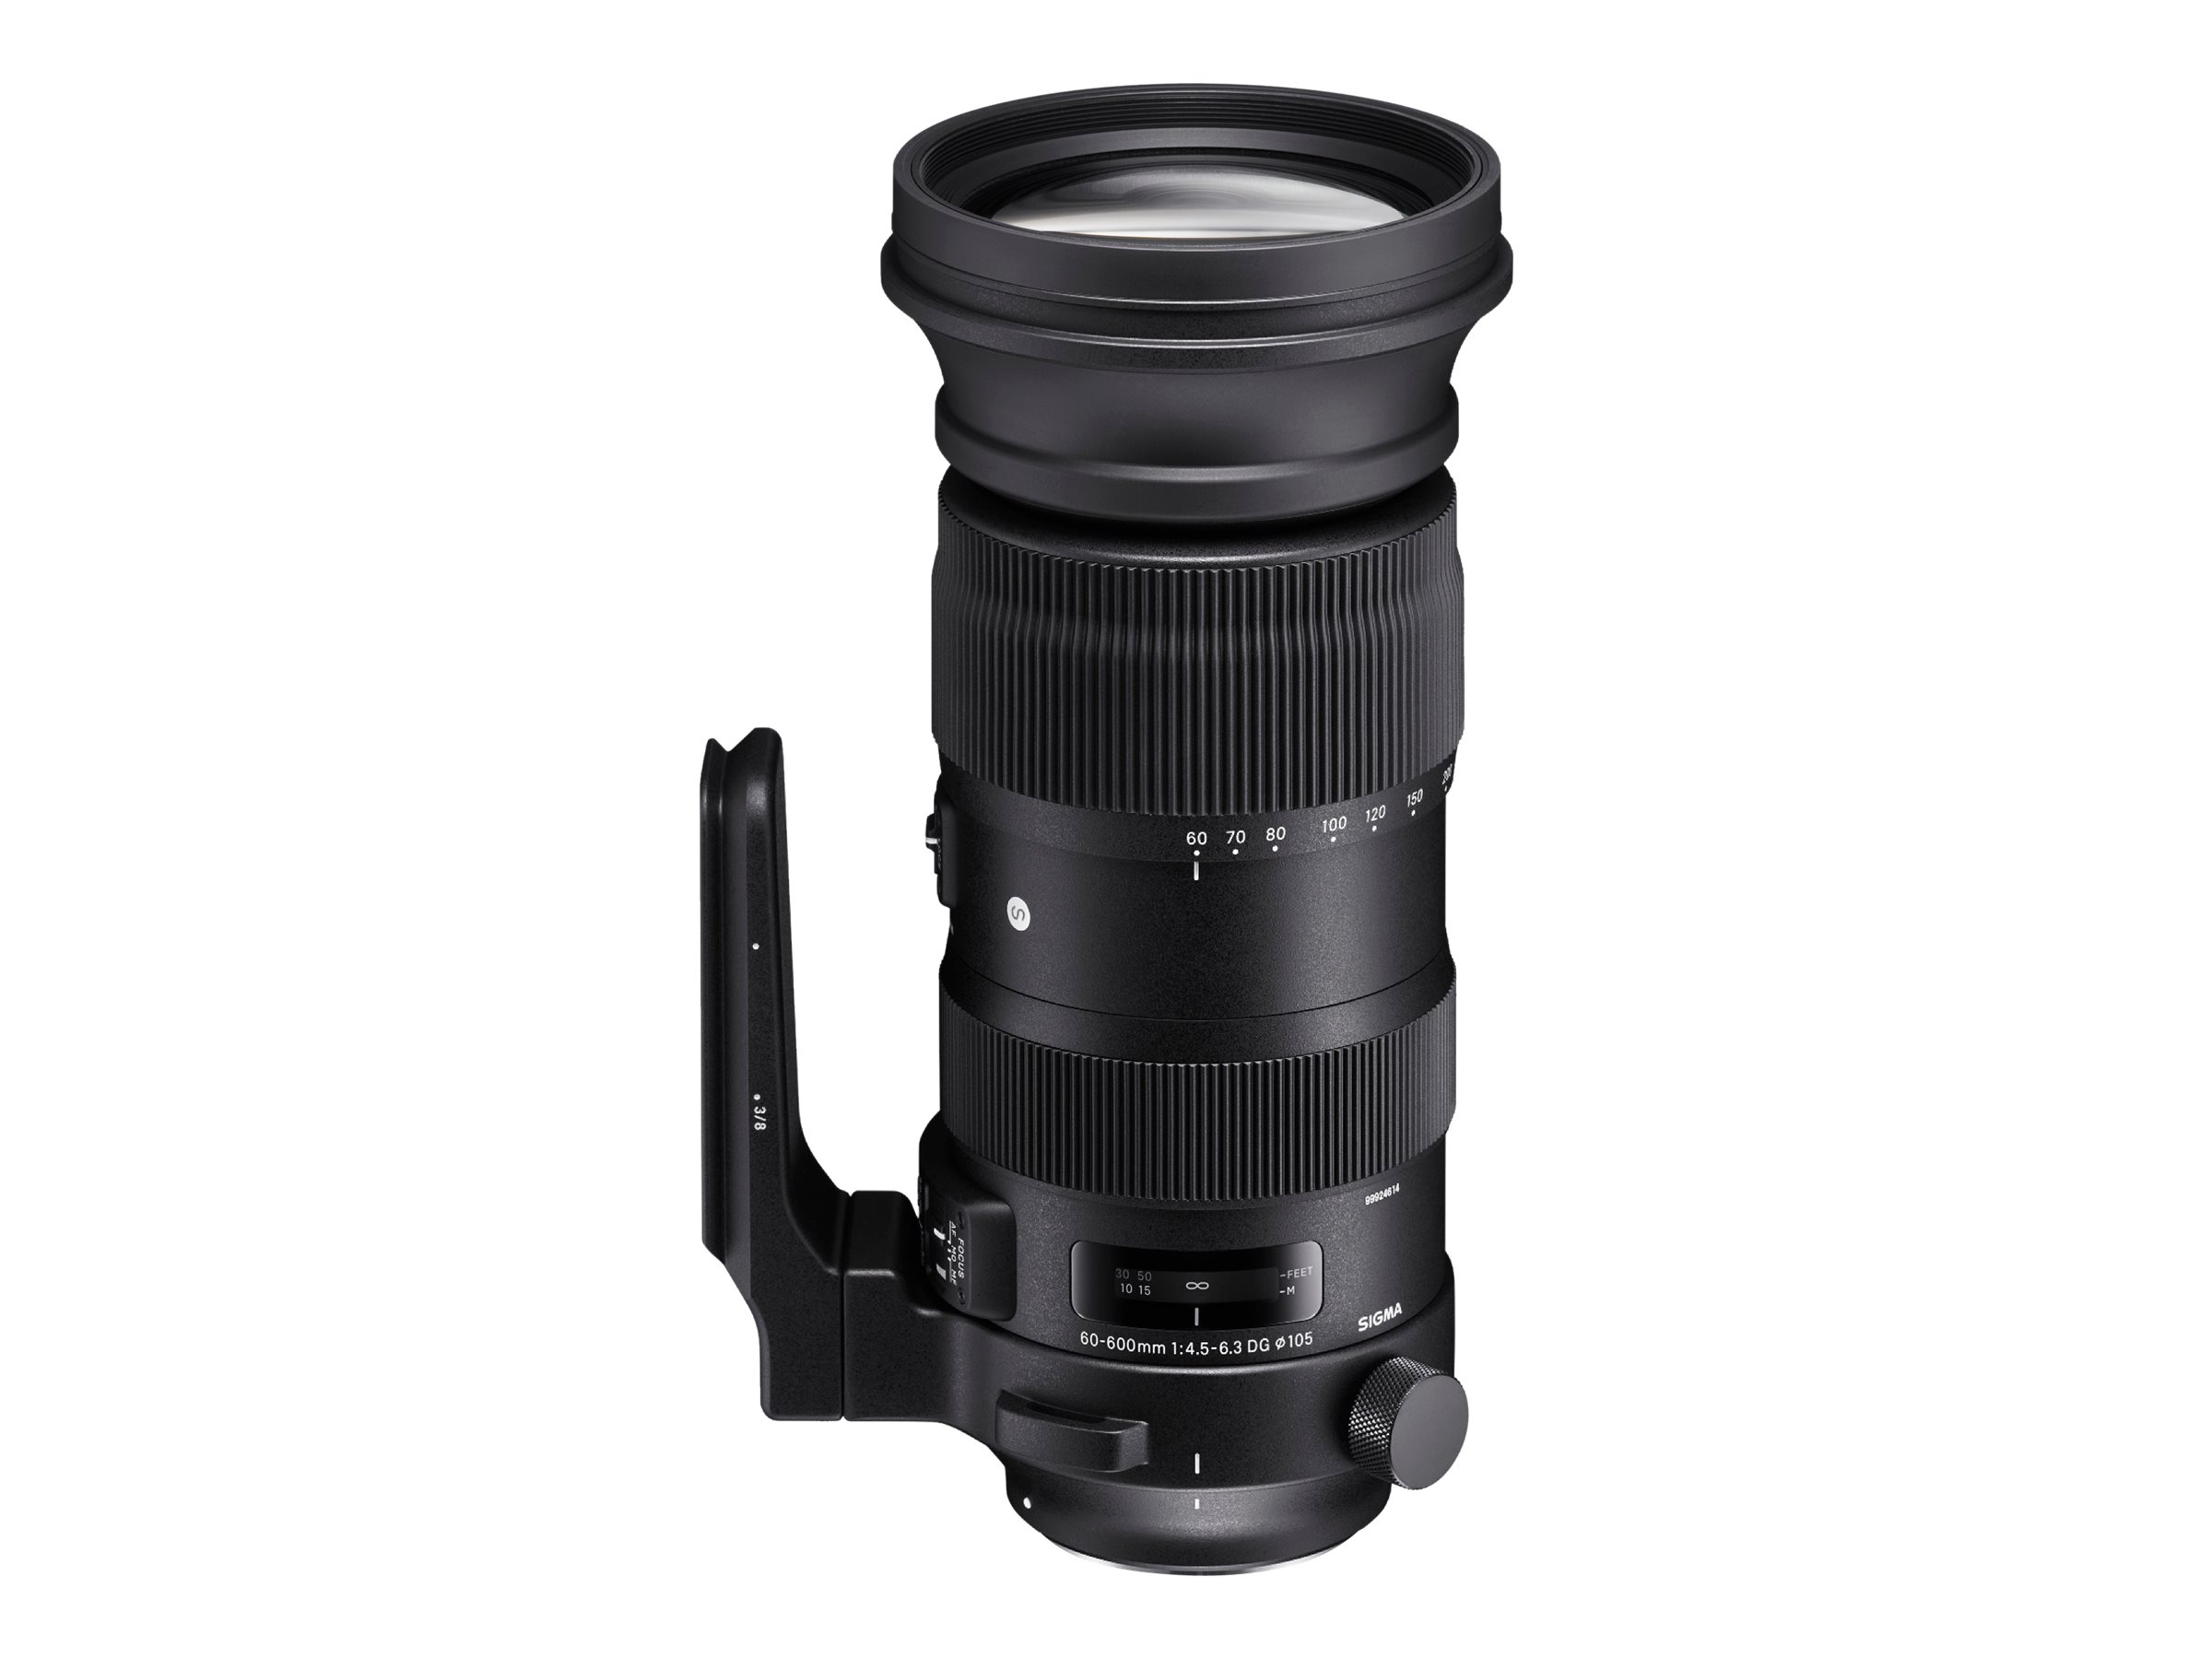 Sigma Sports - Telezoomobjektiv - 60 mm - 600 mm - f/4.5-6.3 DG OS HSM I S - Nikon F